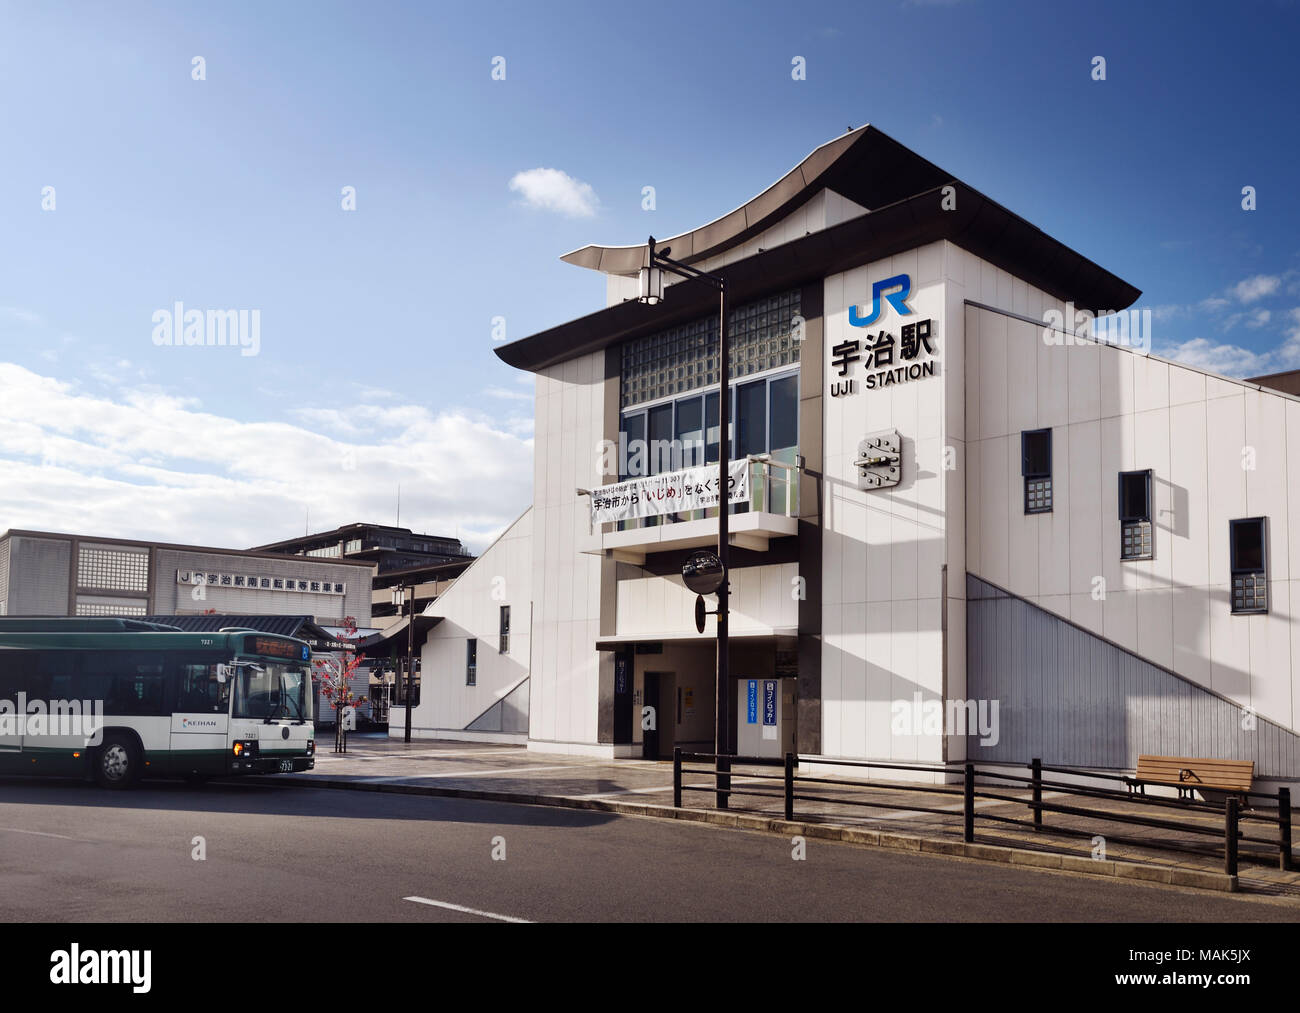 Town of Uji, JR train station building, Uji-shi, Kyoto prefecture, Japan 2017 Stock Photo